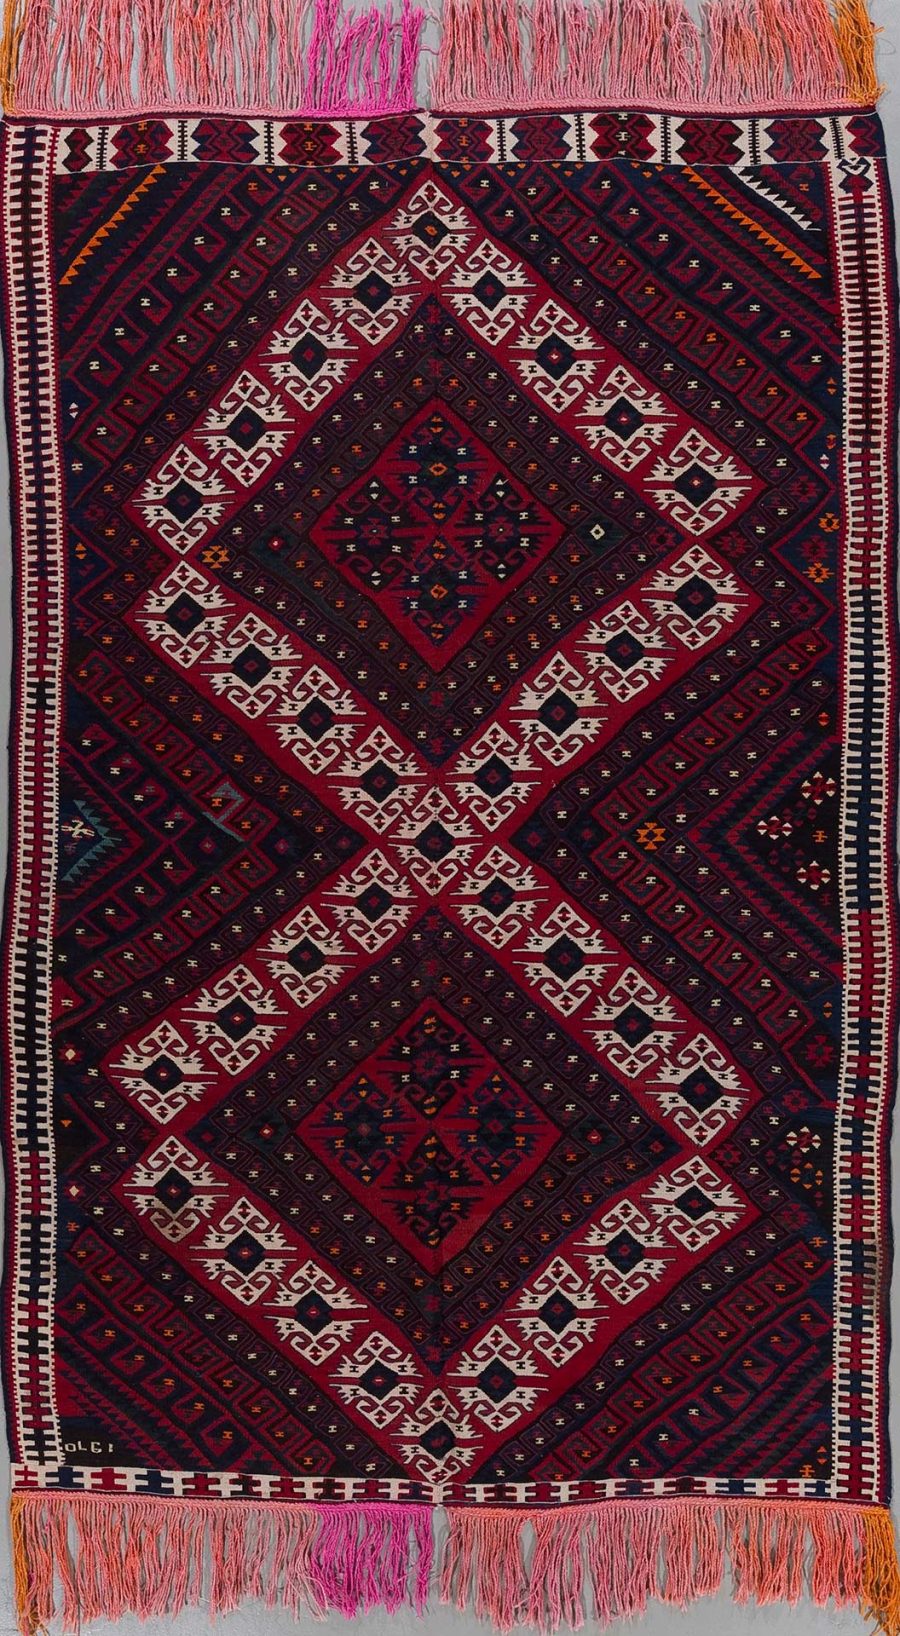 Handgewebter Teppich mit komplexem, symmetrischem Muster in Rot-, Schwarz- und Weißtönen sowie Fransen an den Enden.